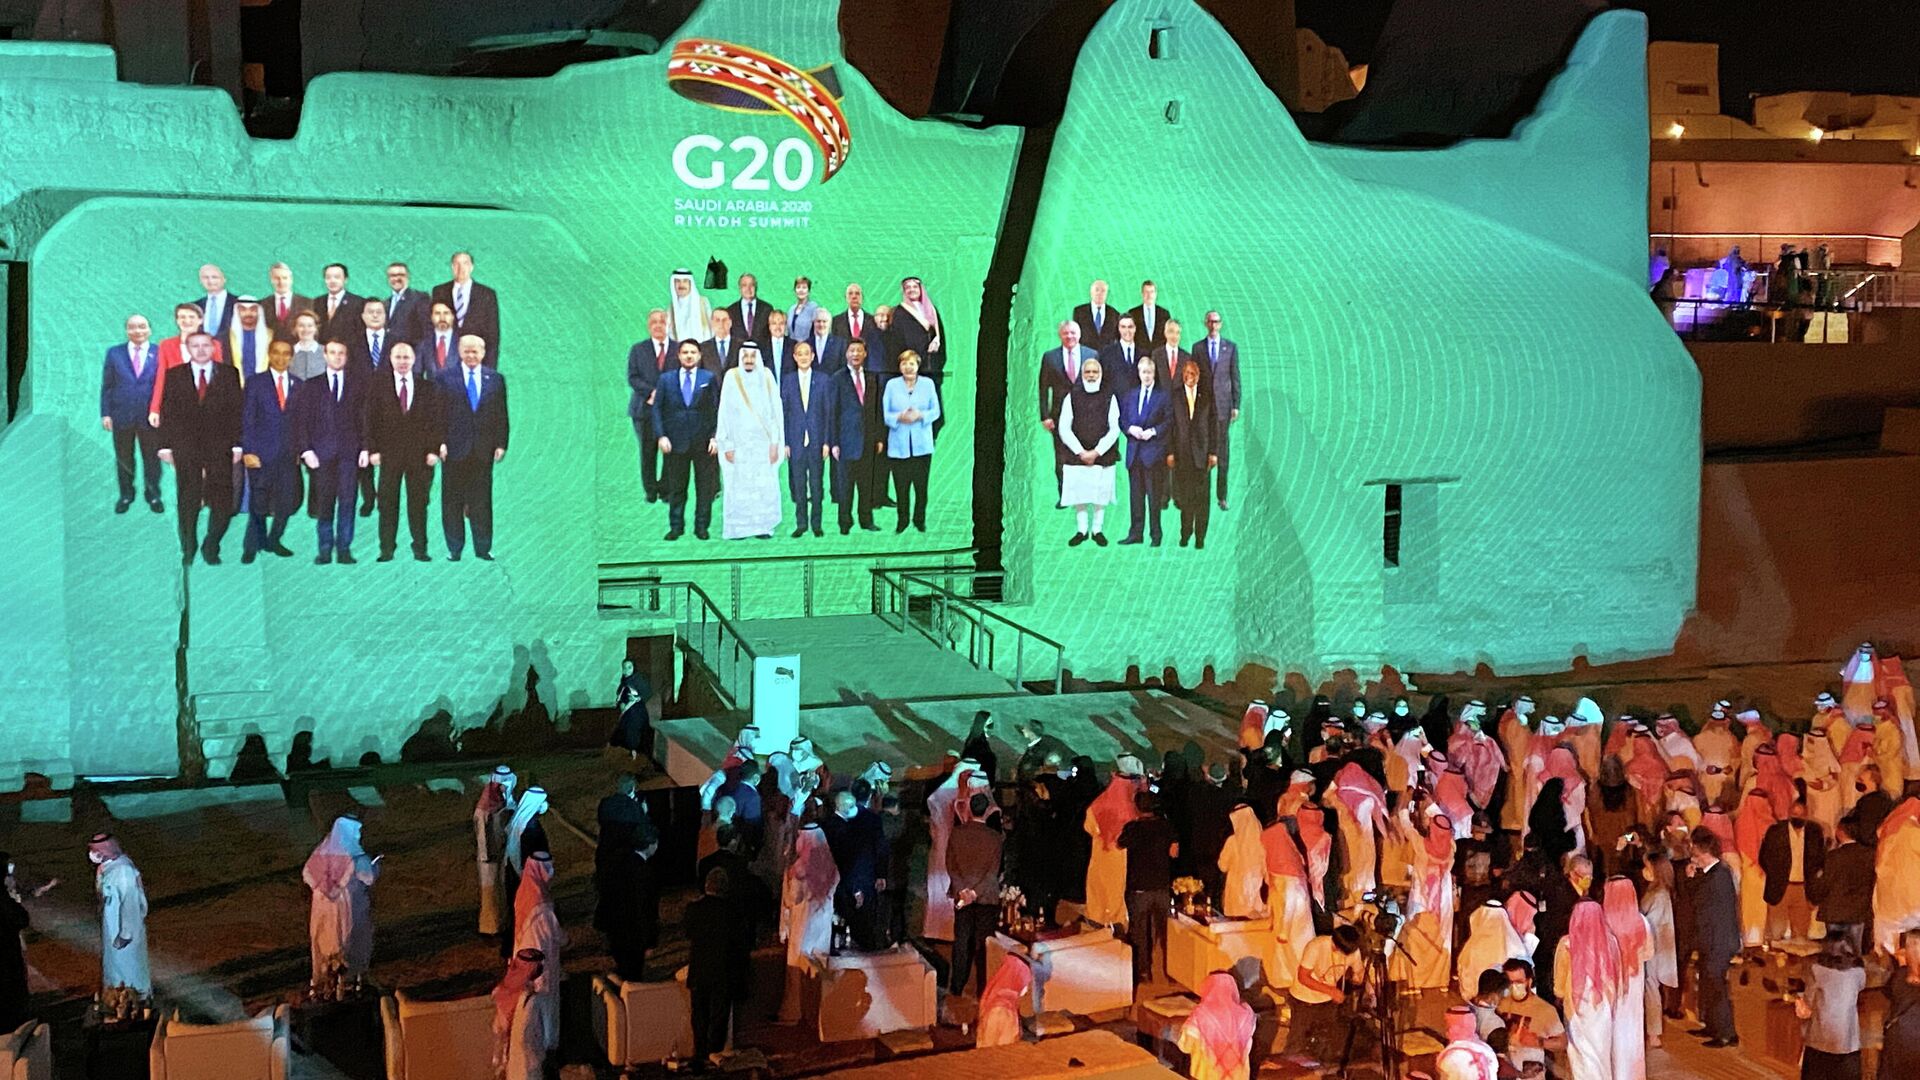 Проекция общего фото лидеров стран G20 на дворце Салва в Ат-Турайфе в Саудовской Аравии - РИА Новости, 1920, 23.11.2020